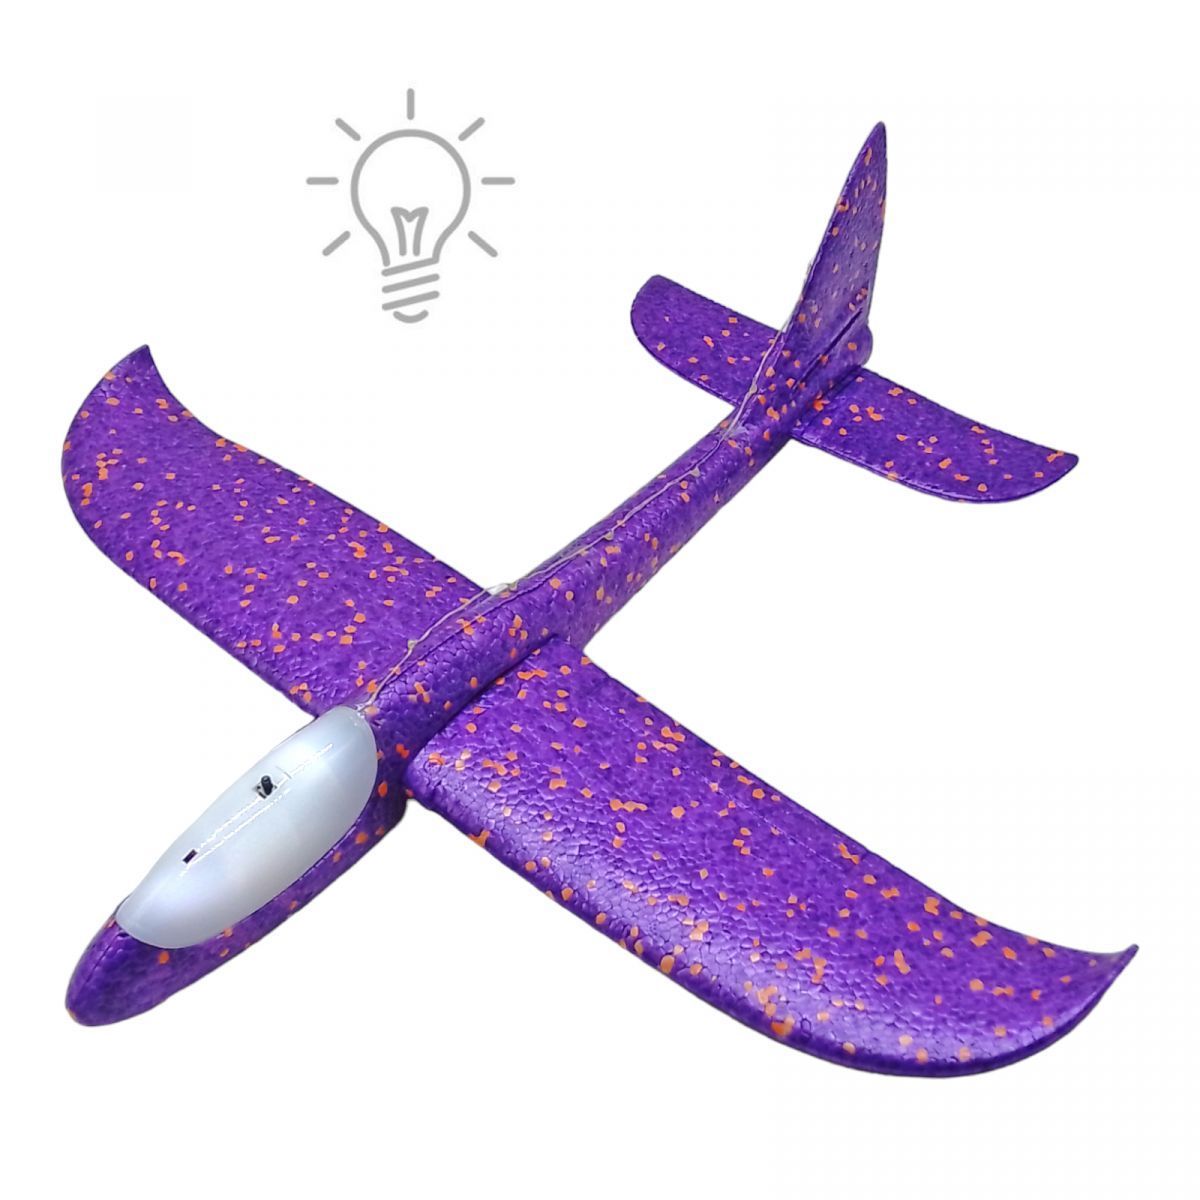 Уцінка.  Пінопластовий планер-літачок, 48 см, зі світлом, фіолетовий не світиться, без упакування